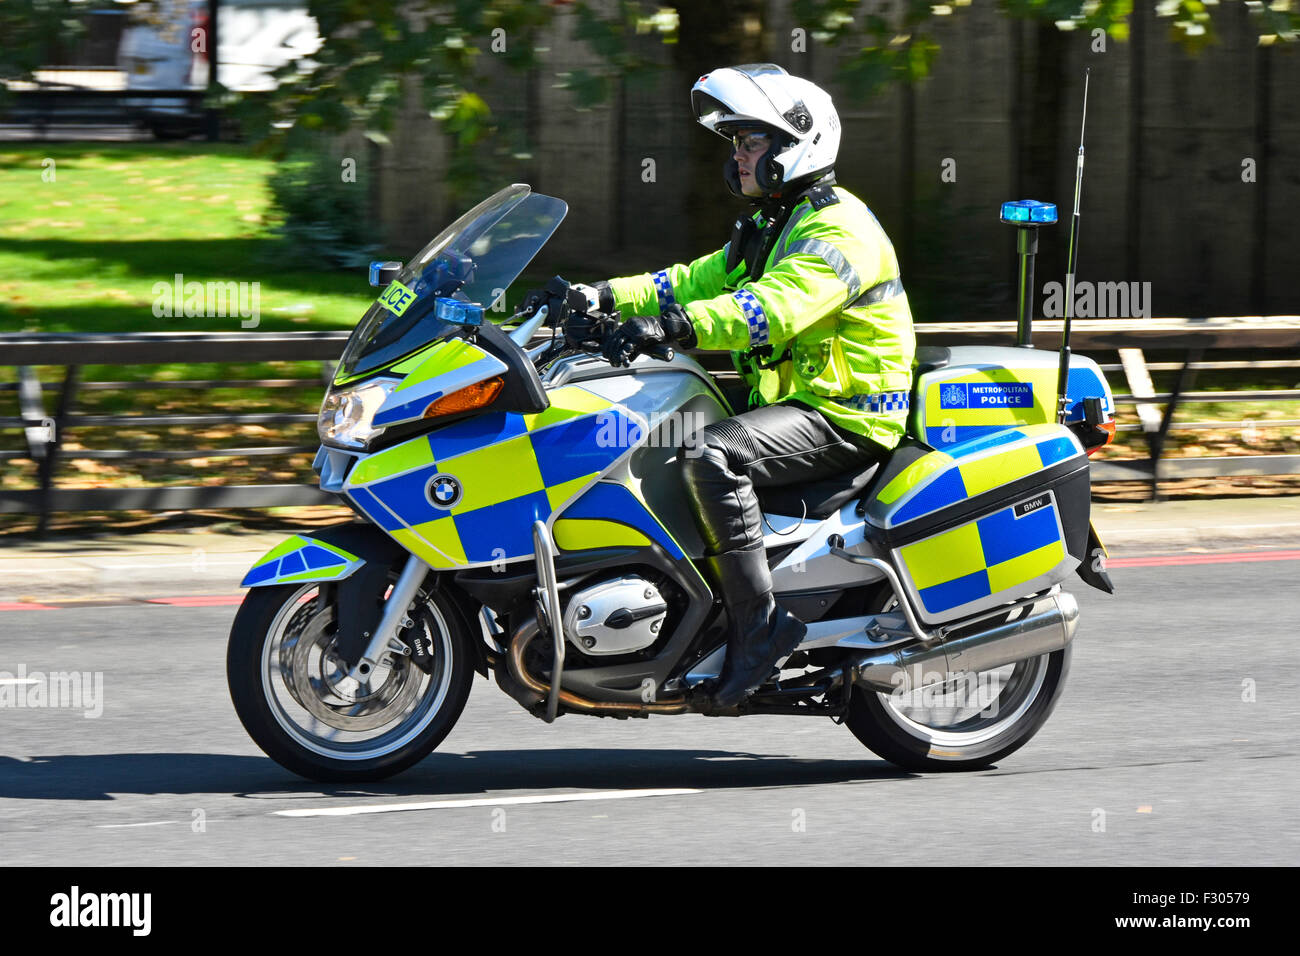 Officier de police métropolitaine en veste haute visibilité patrouilant sur un Moto BMW à Park Lane Londres Angleterre Royaume-Uni Banque D'Images